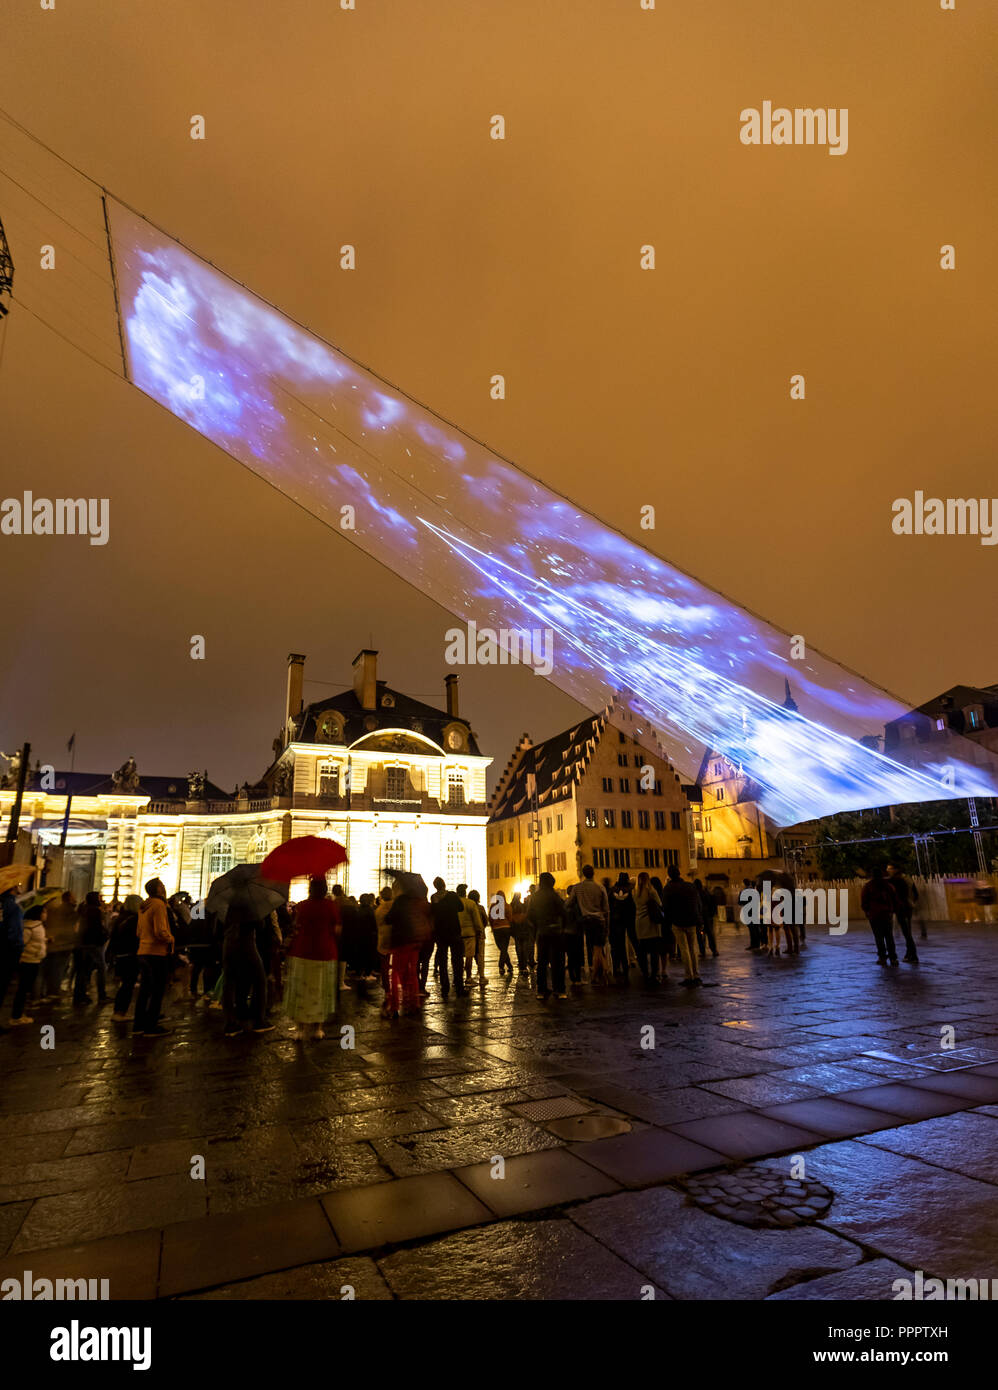 Light show plusieurs fois par nuit en septembre à la Place du Château, dans le quartier de la cathédrale. Strasbourg, France Banque D'Images